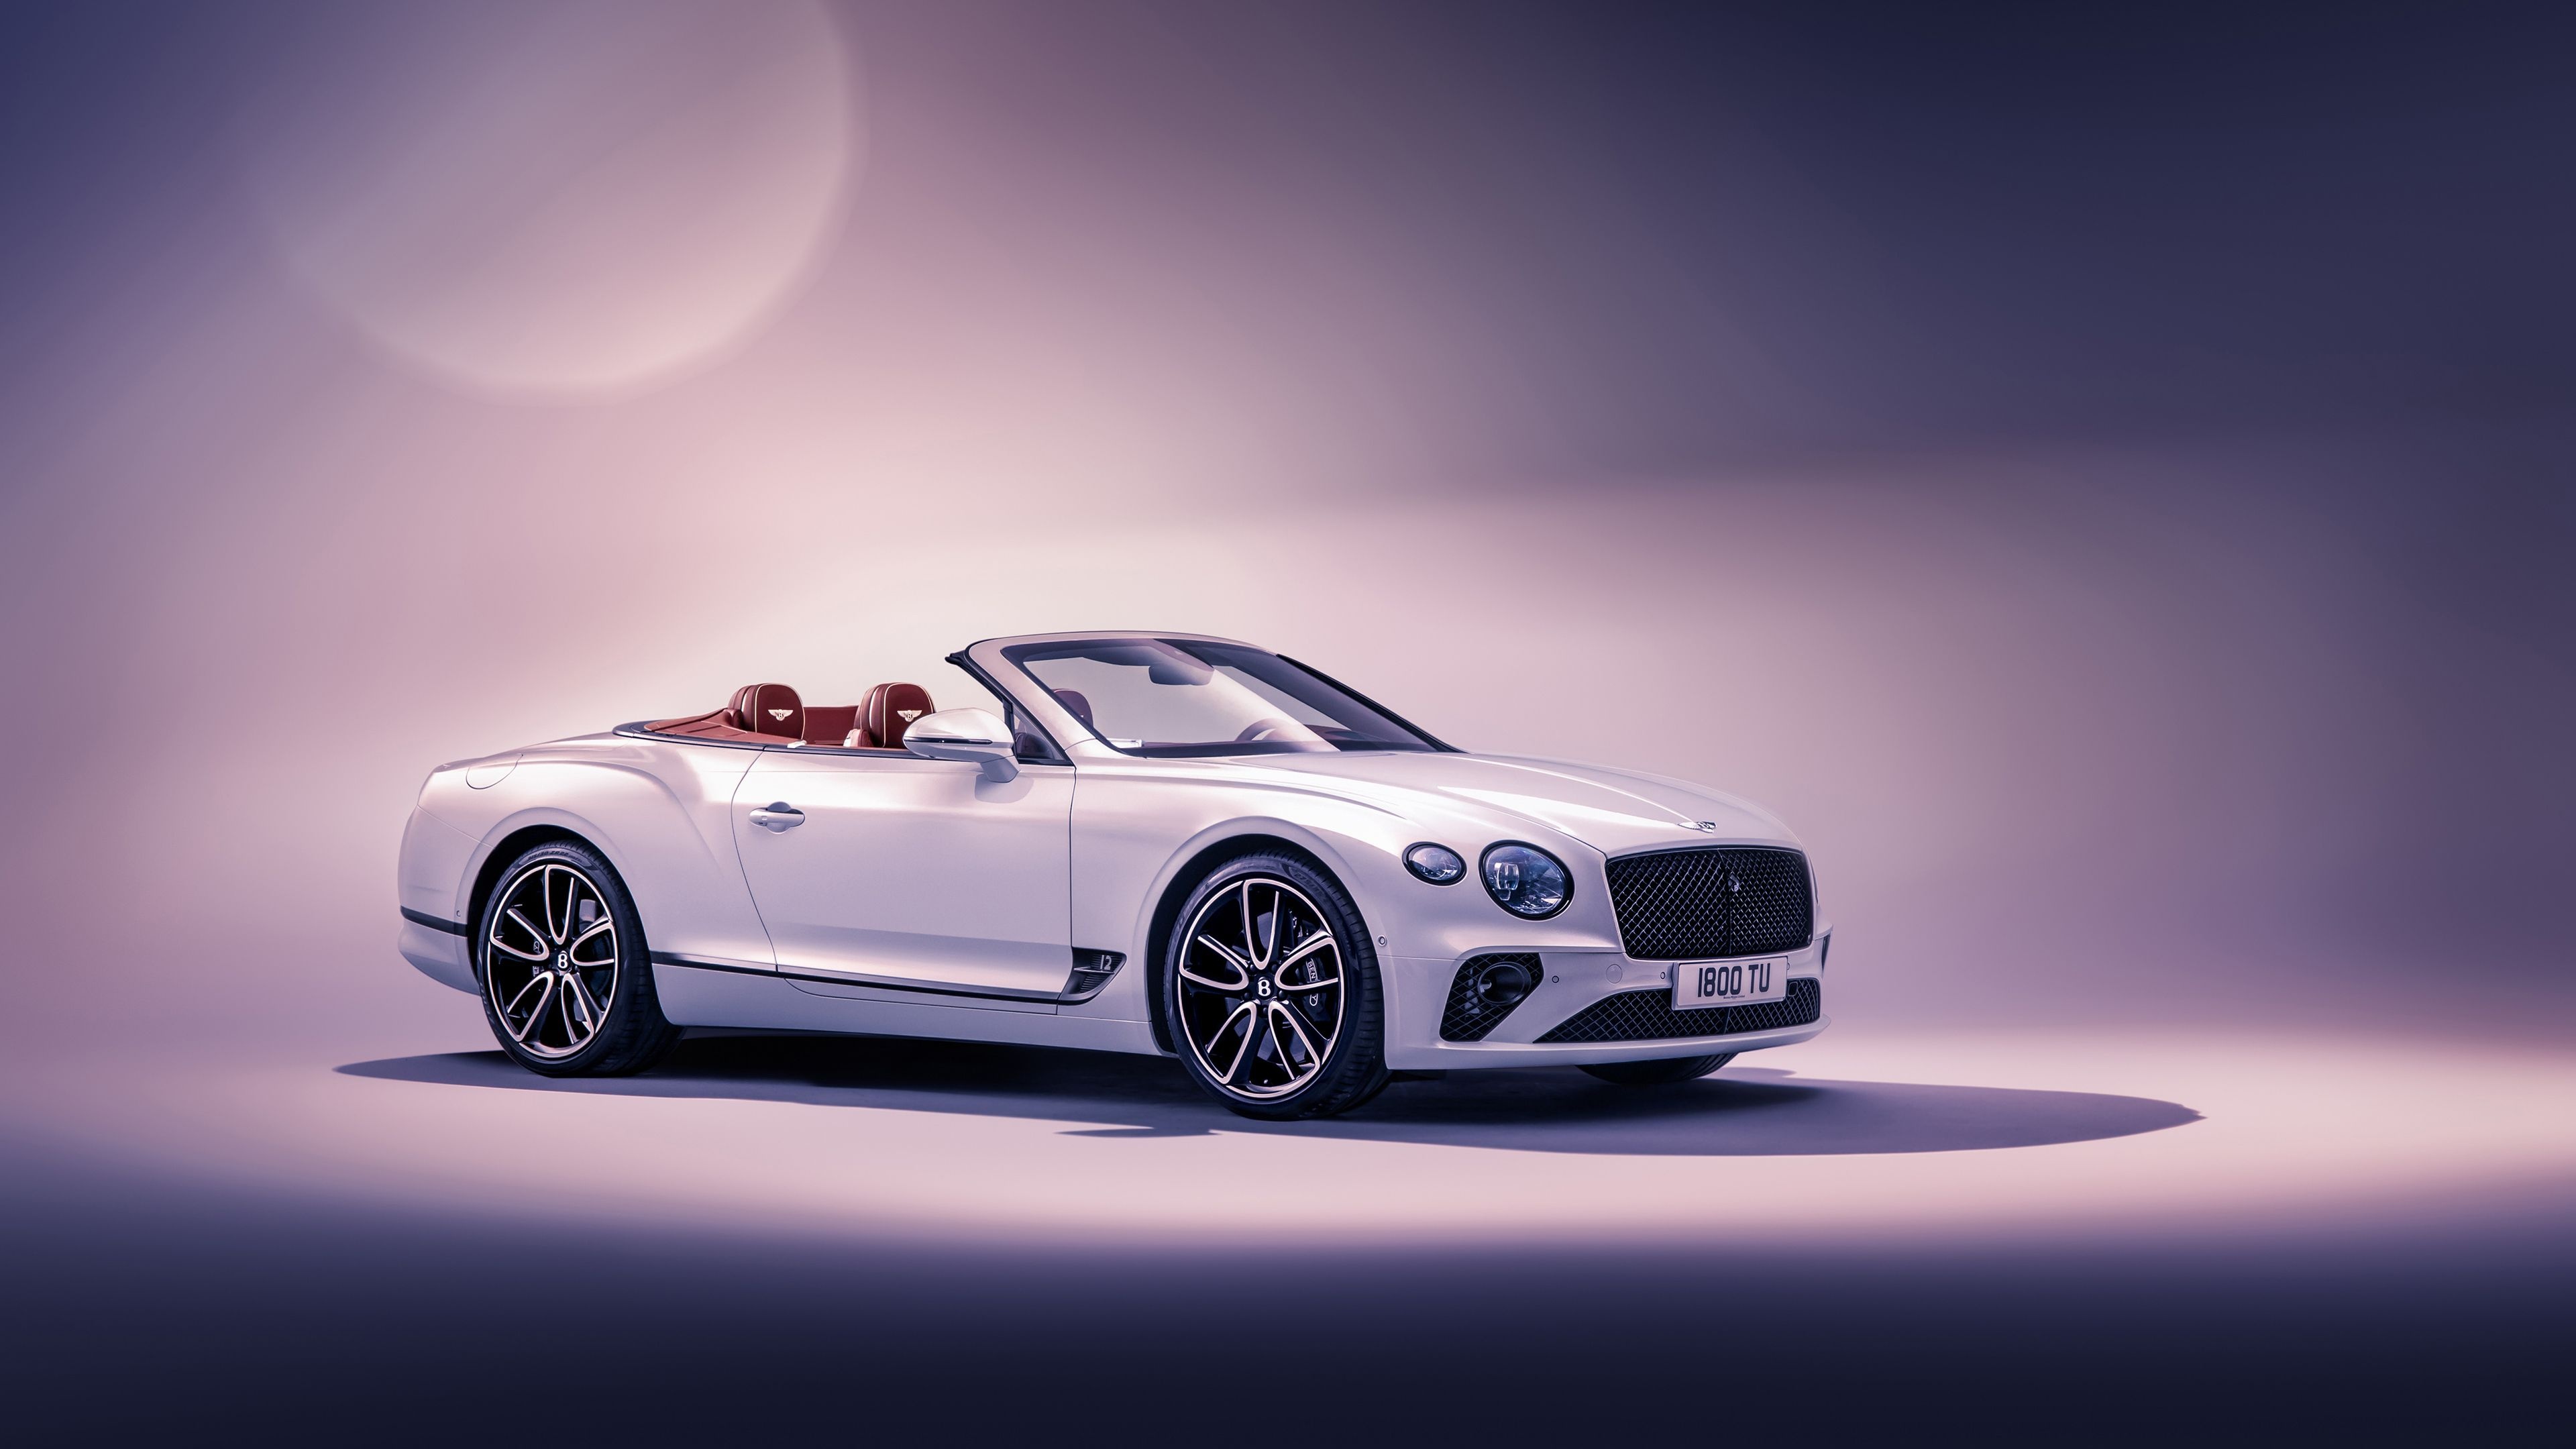 Bentley Continental GTC, Convertible beauty, 4K HD wallpapers, Bentley's finest, 3840x2160 4K Desktop